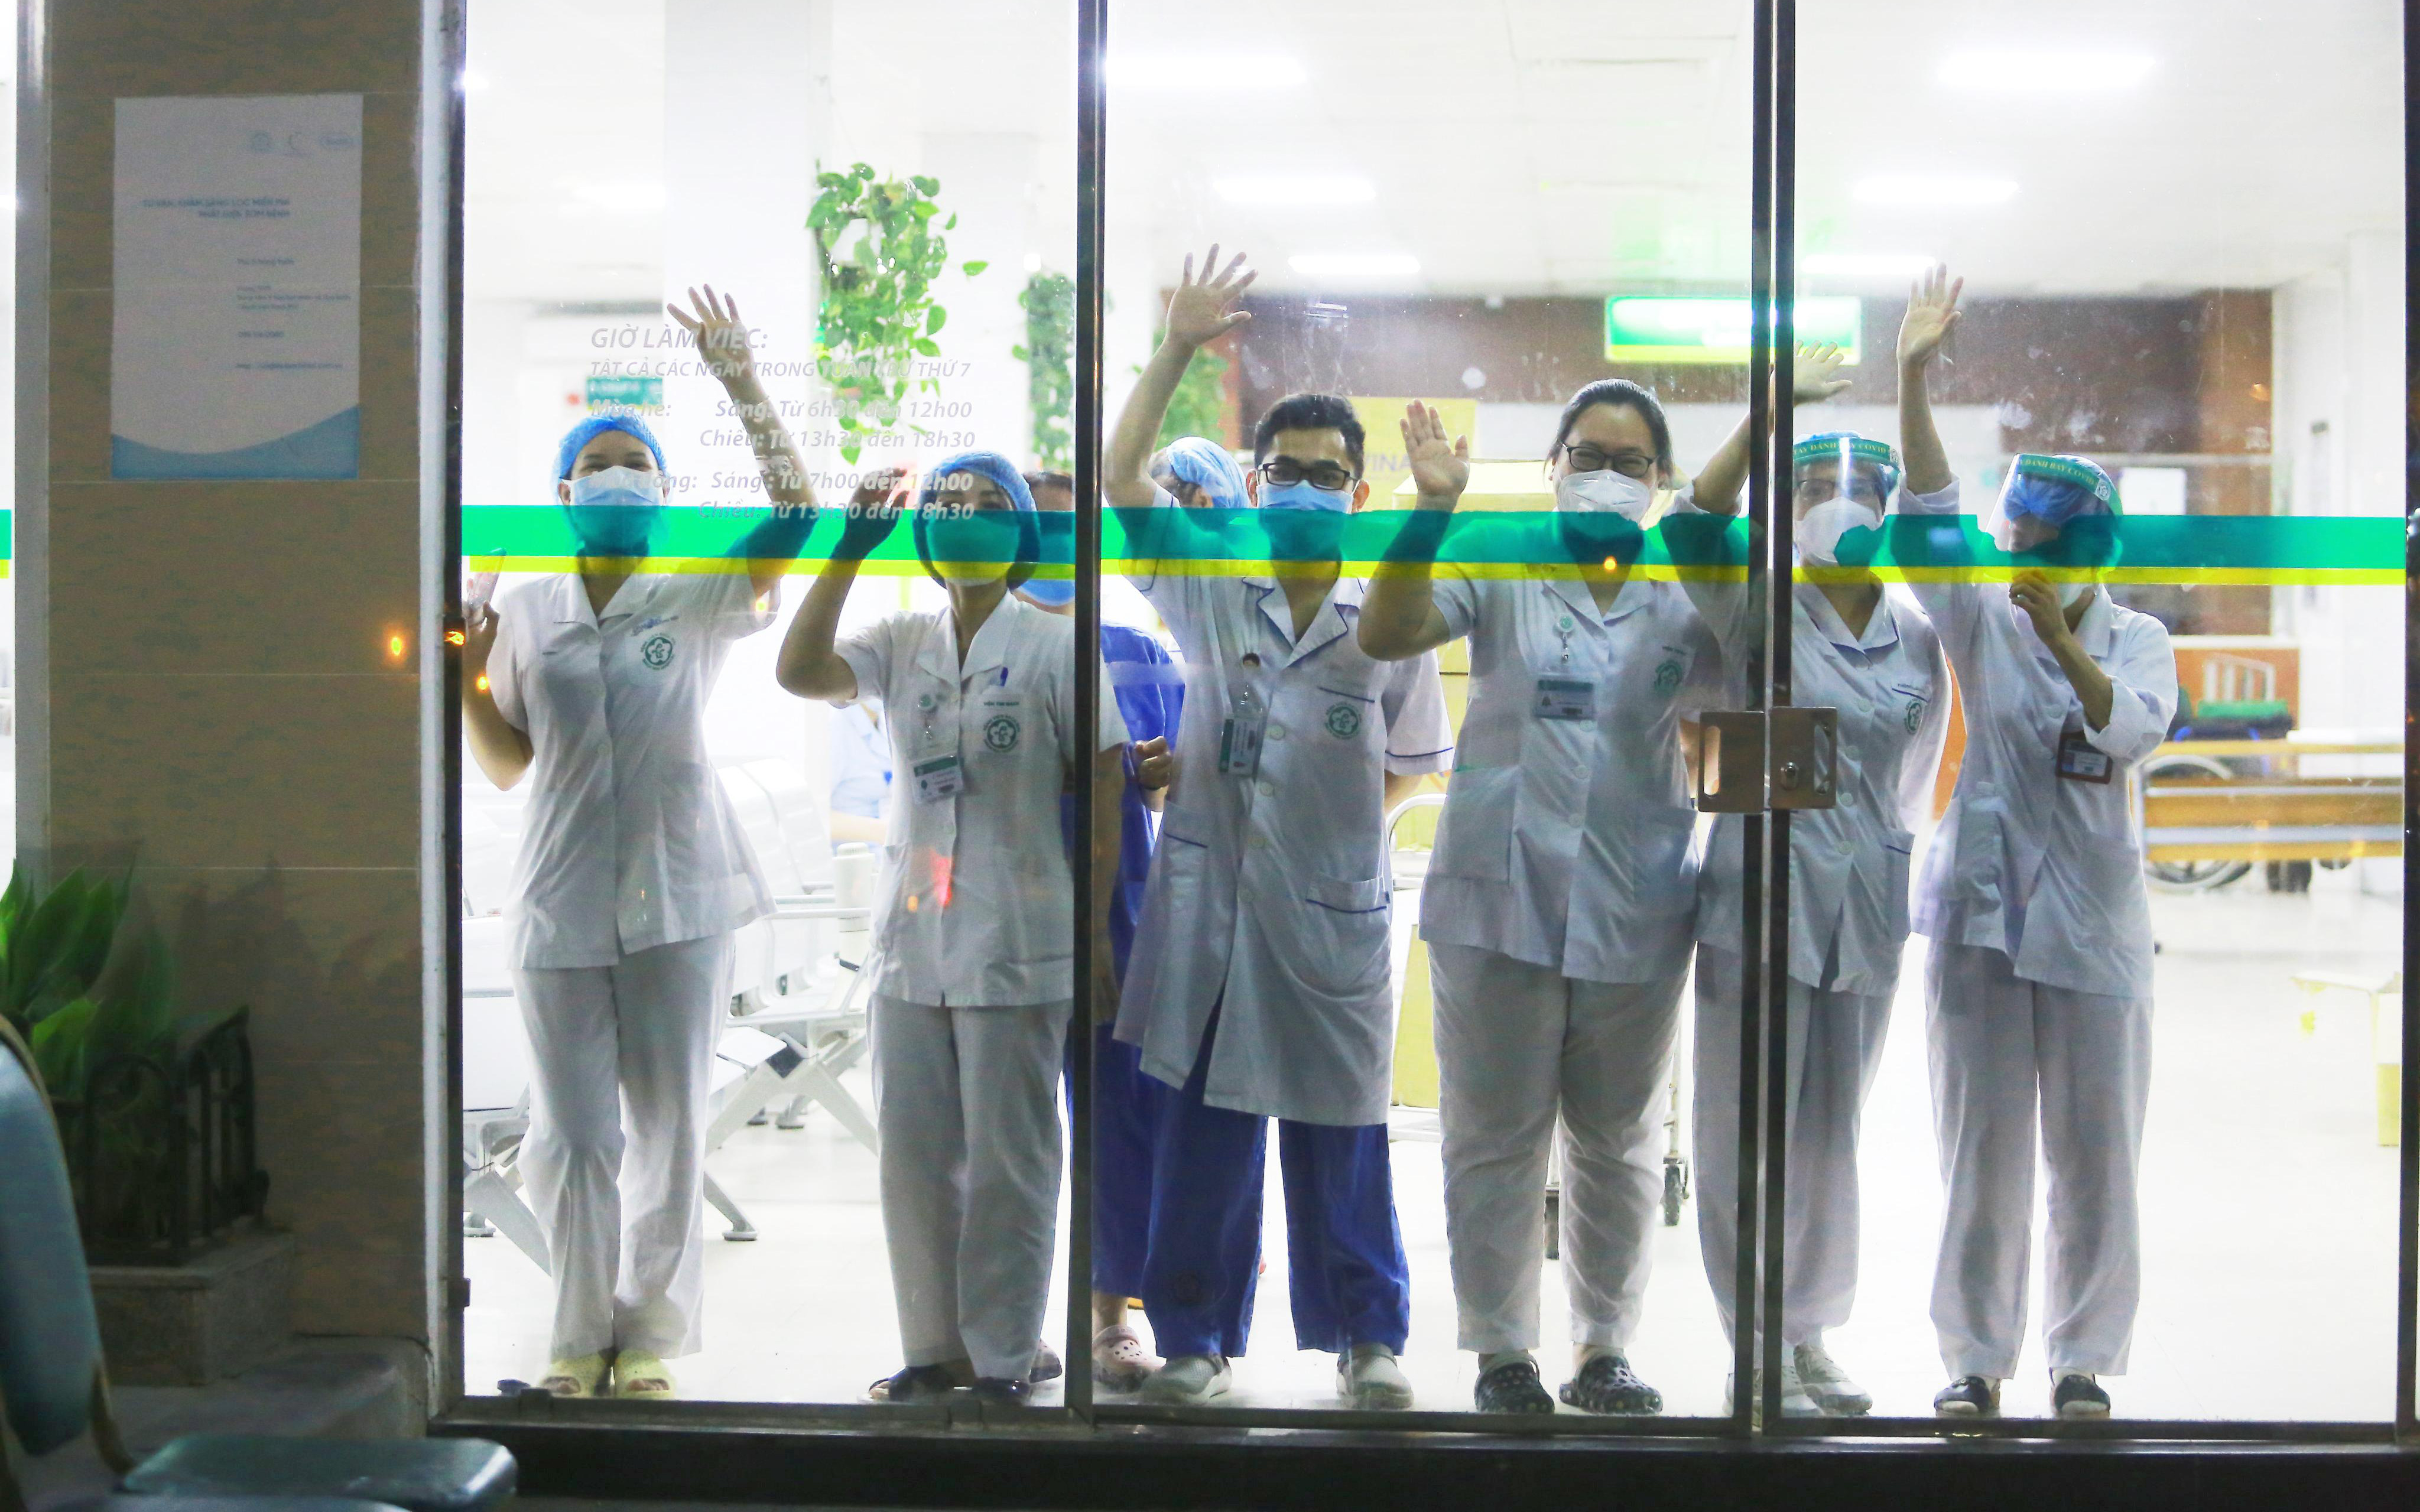 Hình ảnh các y bác sĩ tại Bệnh viện Bạch Mai vẫy tay chào qua cửa kính: Họ đang ngày đêm chiến đấu ở tuyến đầu nhưng vẫn luôn lạc quan như vậy